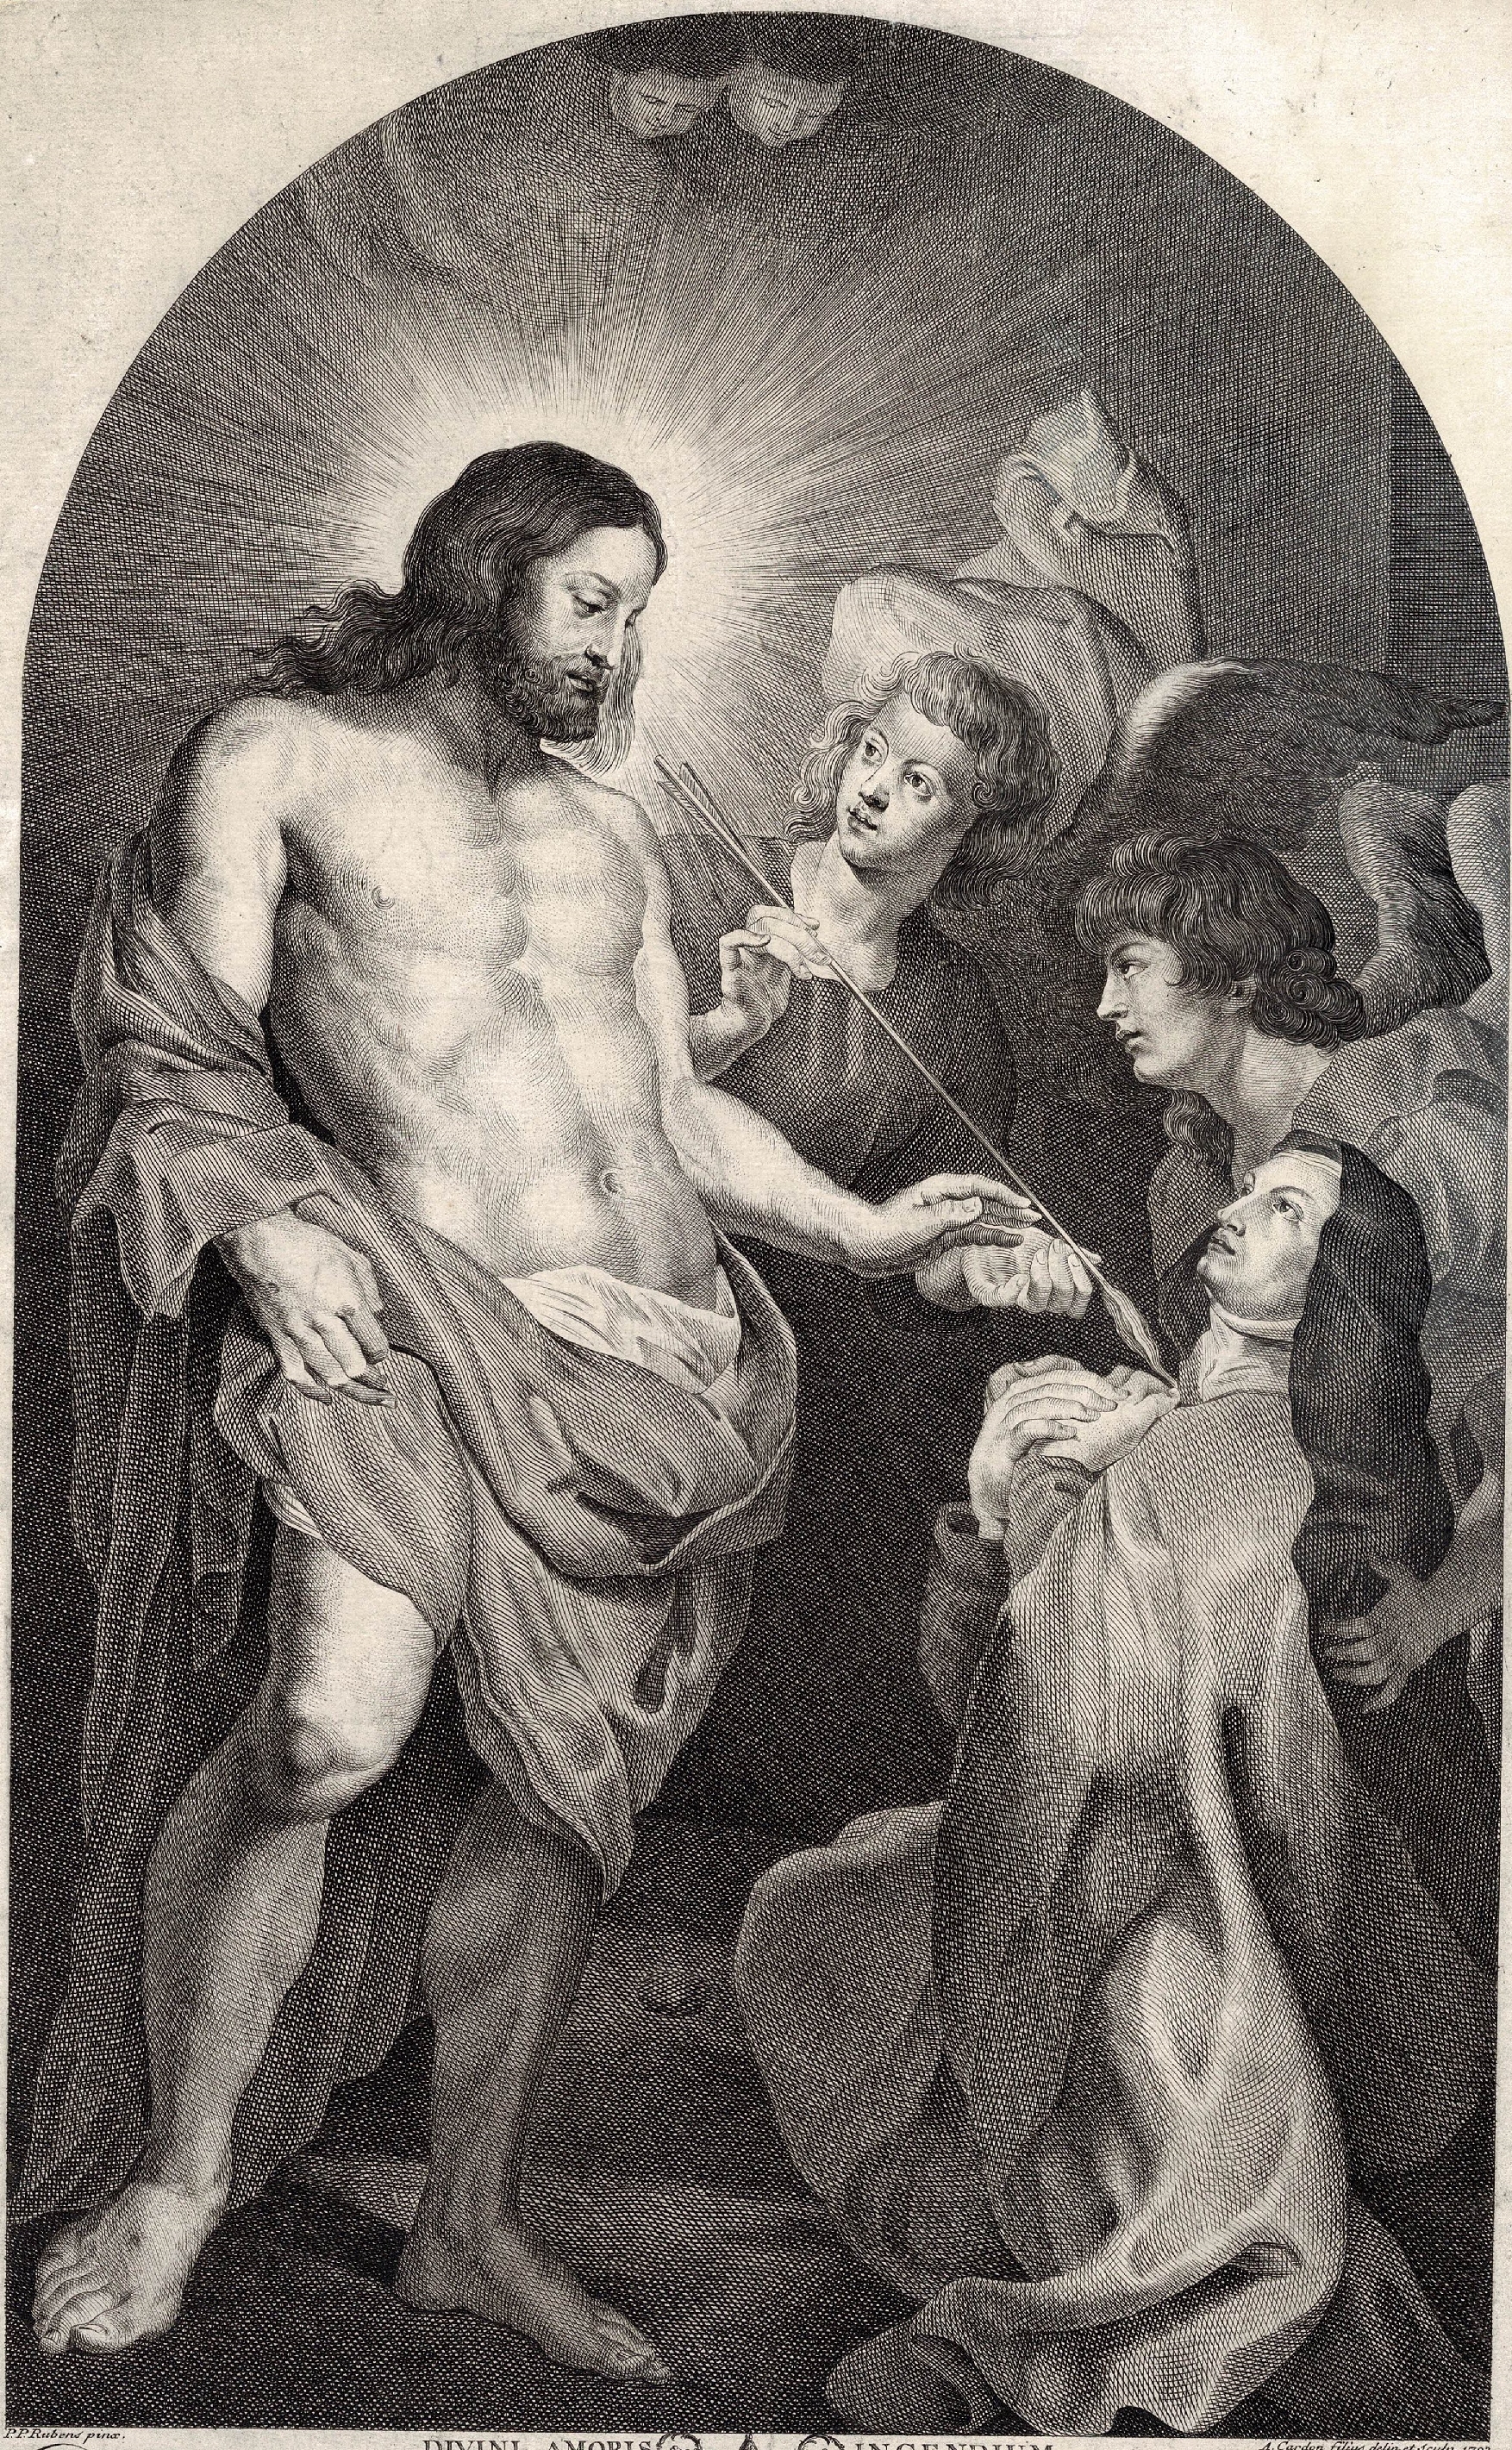 Pieter Paul Rubens, Anthony Cardon, St Teresa of Avila kneeling before Christ;